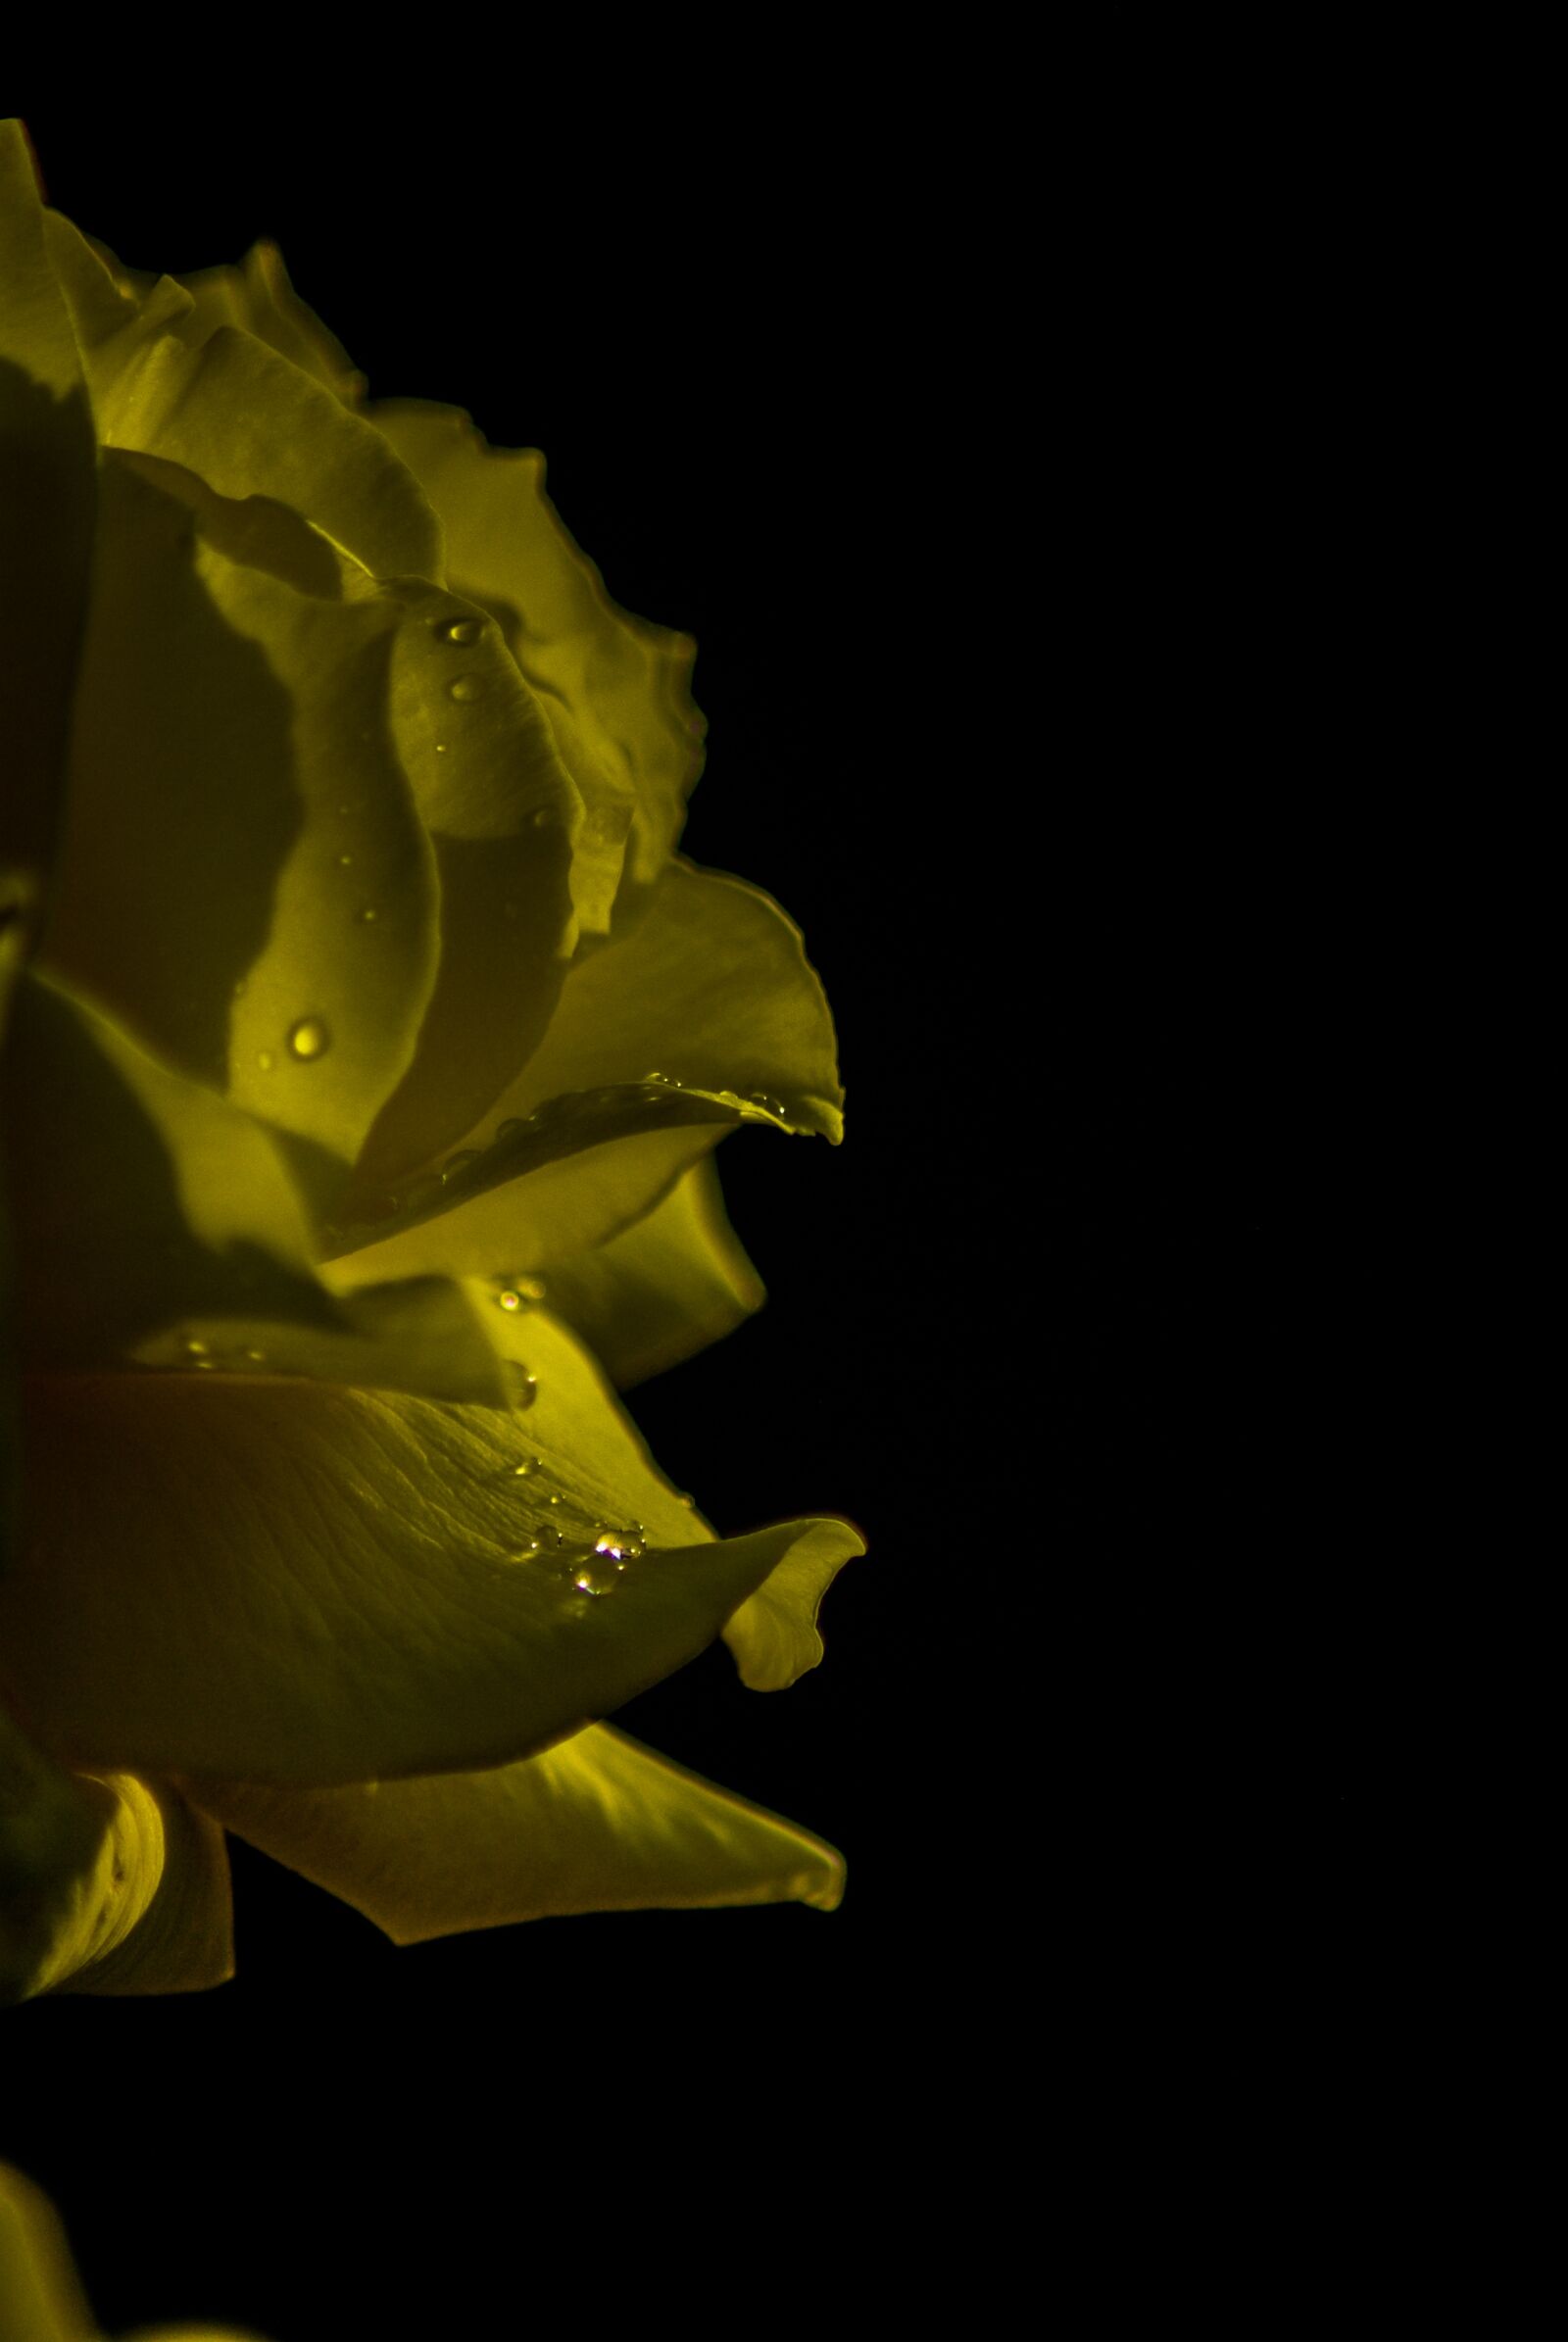 Pentax K10D + Tamron AF 70-300mm F4-5.6 Di LD Macro sample photo. Yellow rose, drop, yellow photography